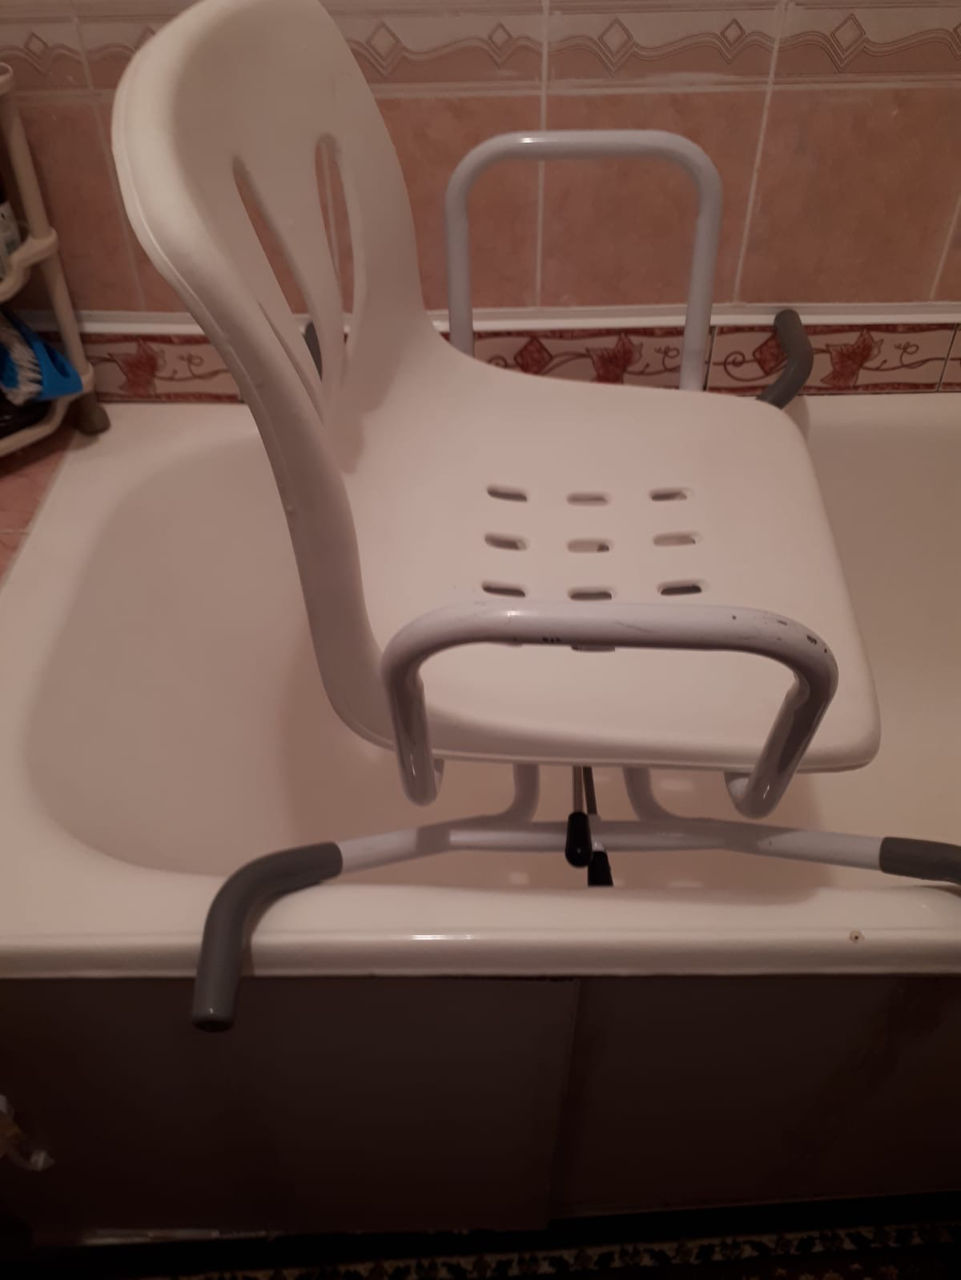 Сиденье для ванной поворотное ММ-SC-1 для инвалидов и пожилых